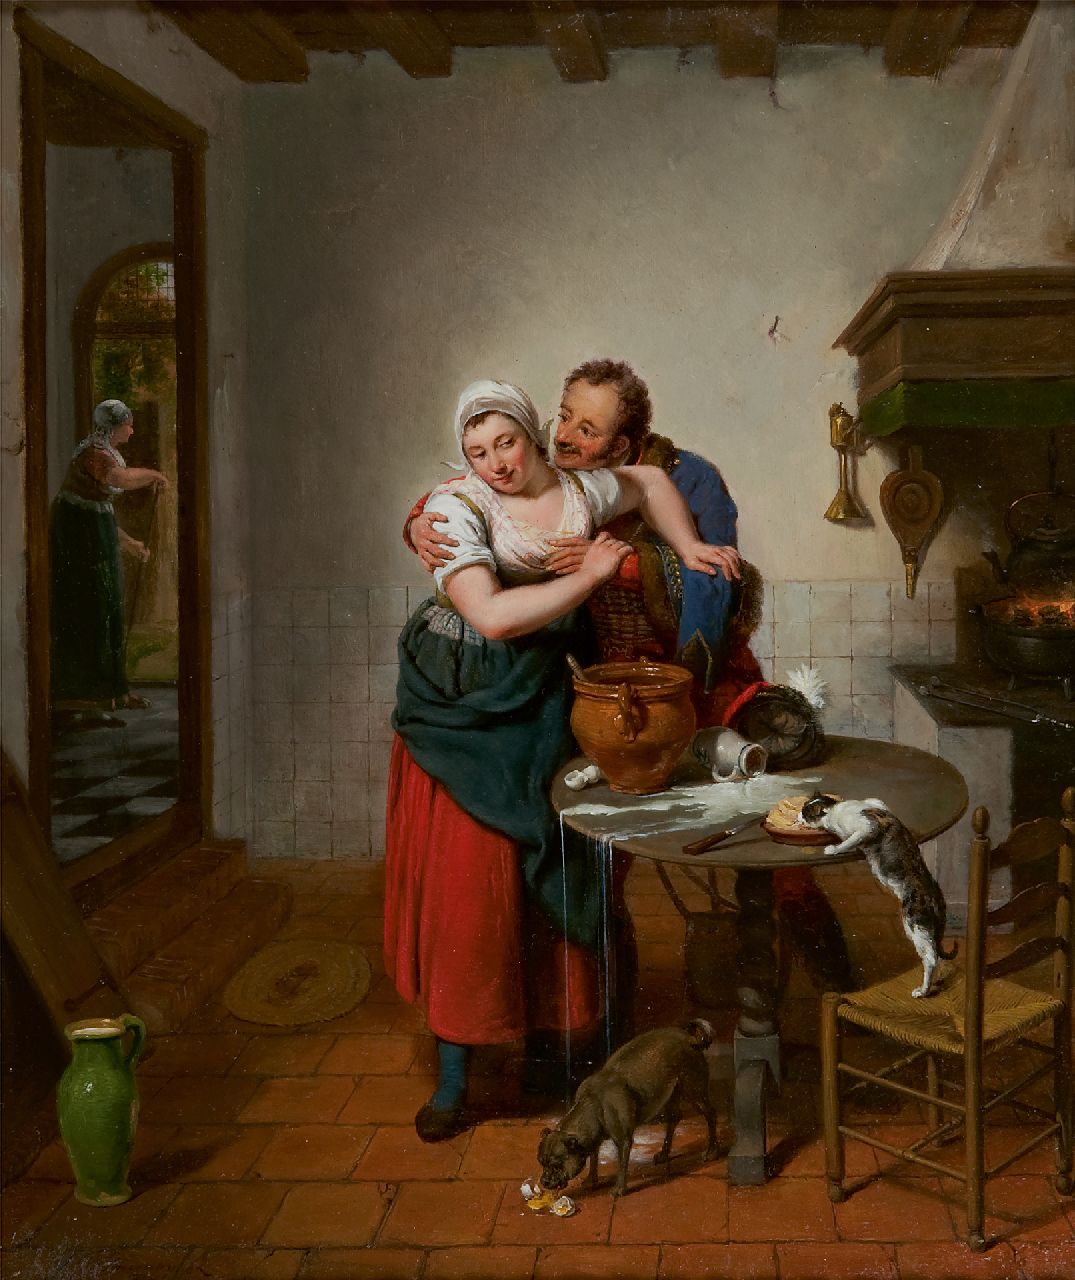 Pieneman J.W.  | Jan Willem Pieneman | Schilderijen te koop aangeboden | De vurige vrijer, olieverf op paneel 38,8 x 32,3 cm, gesigneerd linksonder en gedateerd 1814